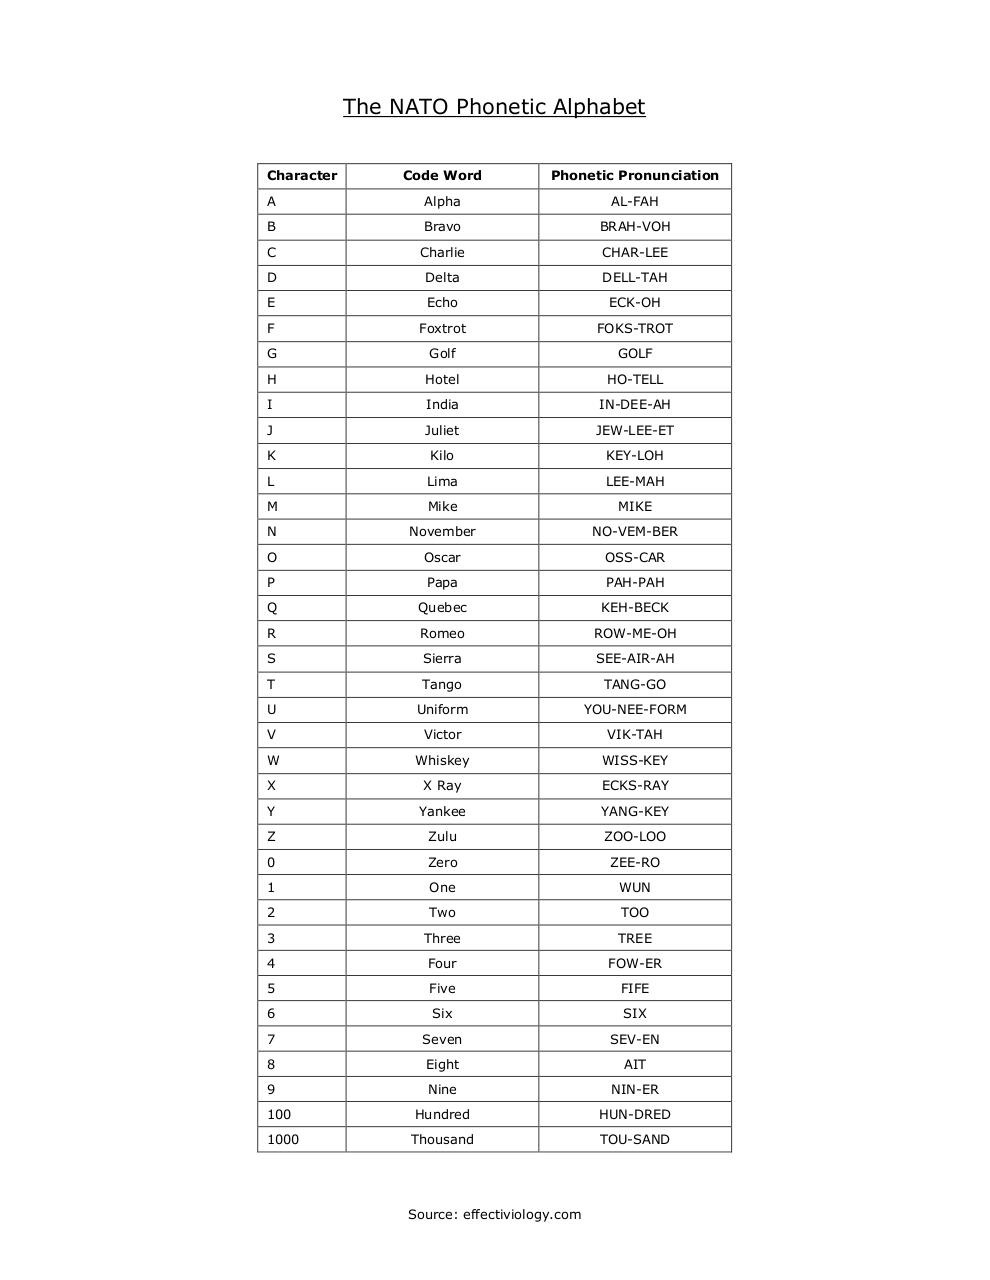 Phonetic Alphabet Tables Pdf | Brokeasshome.com